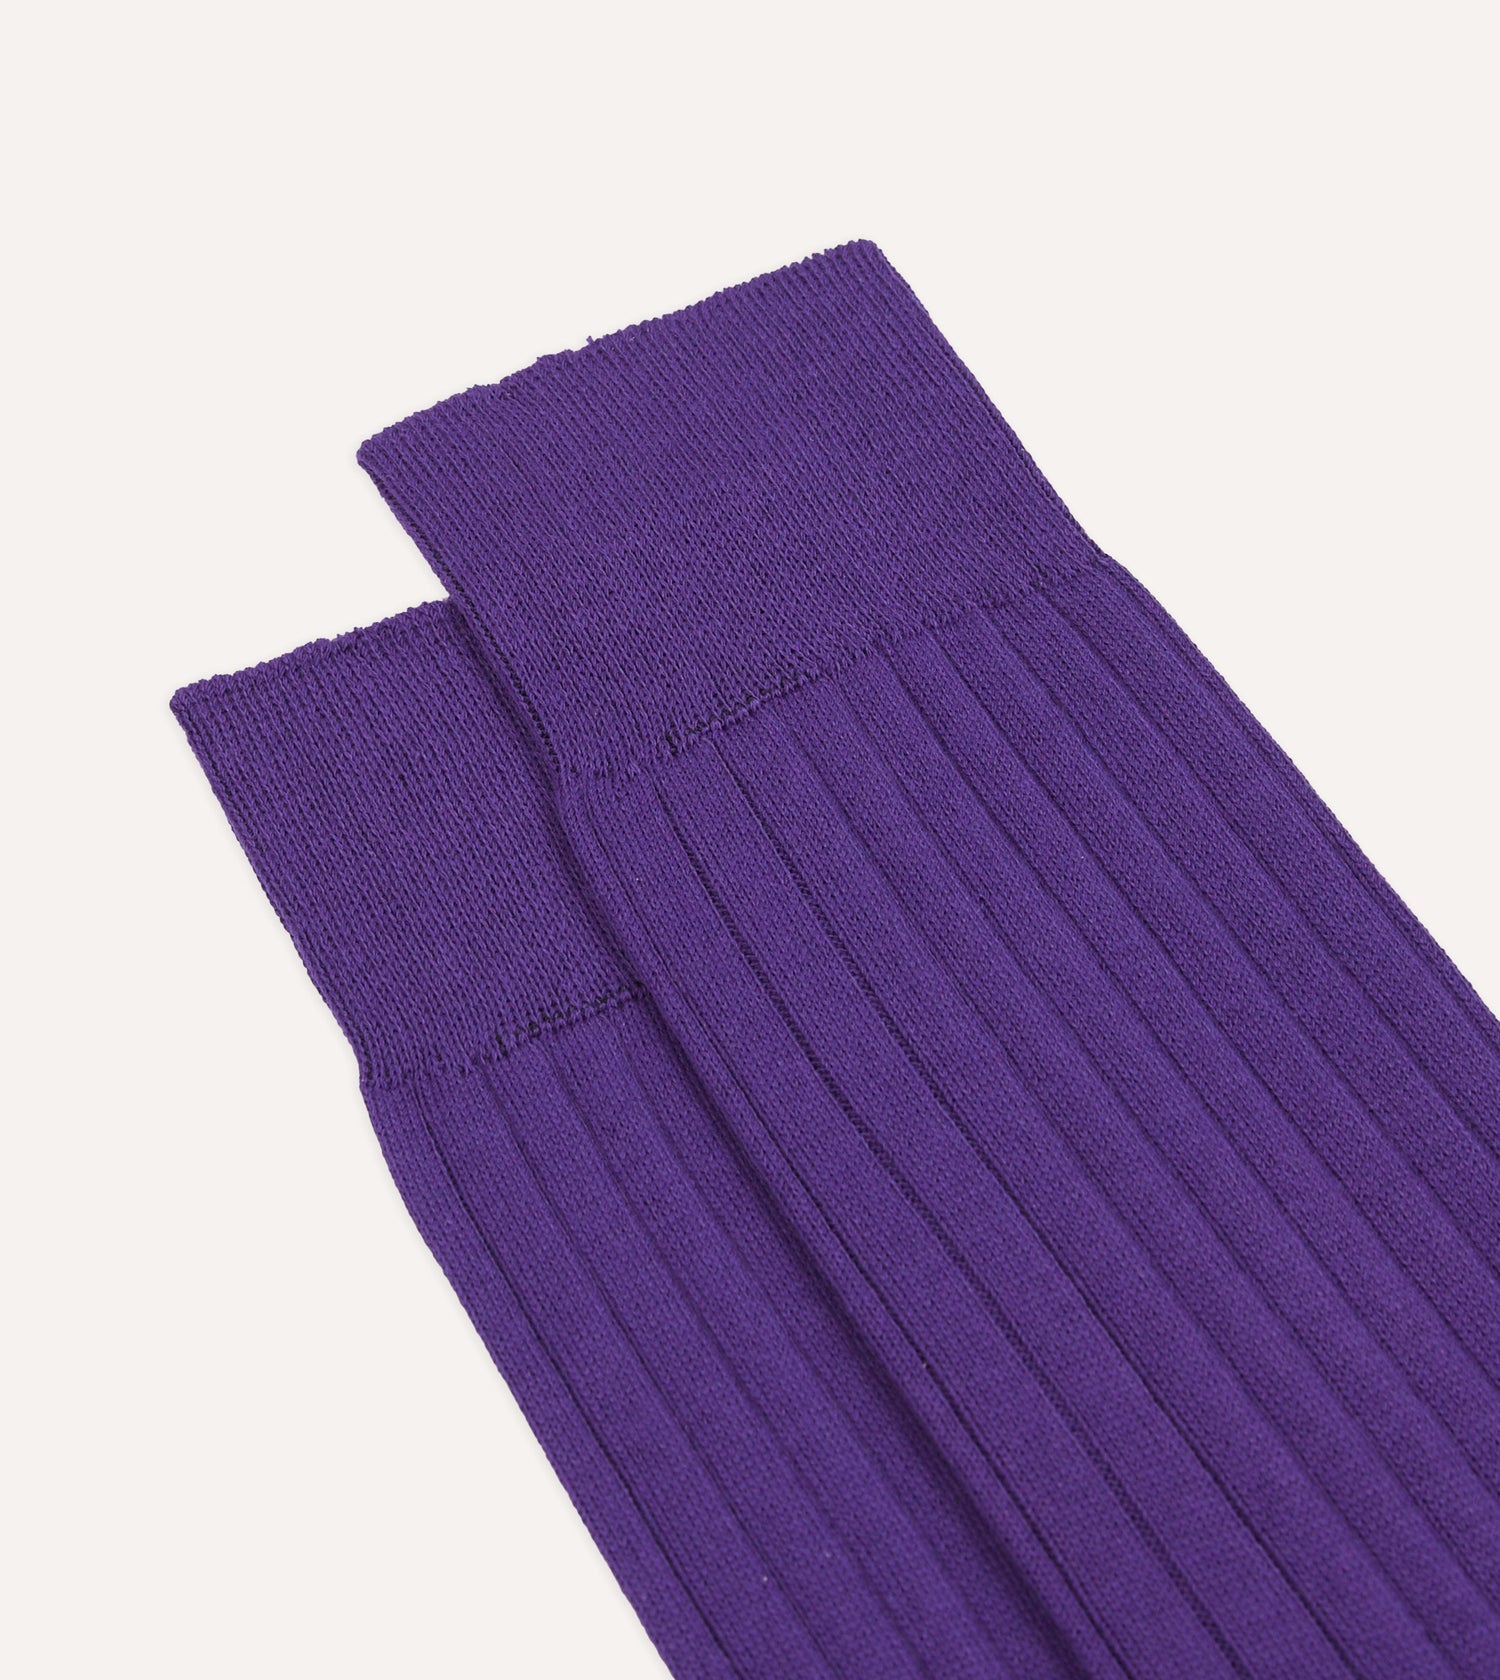 Purple Cotton Mid-Calf Socks